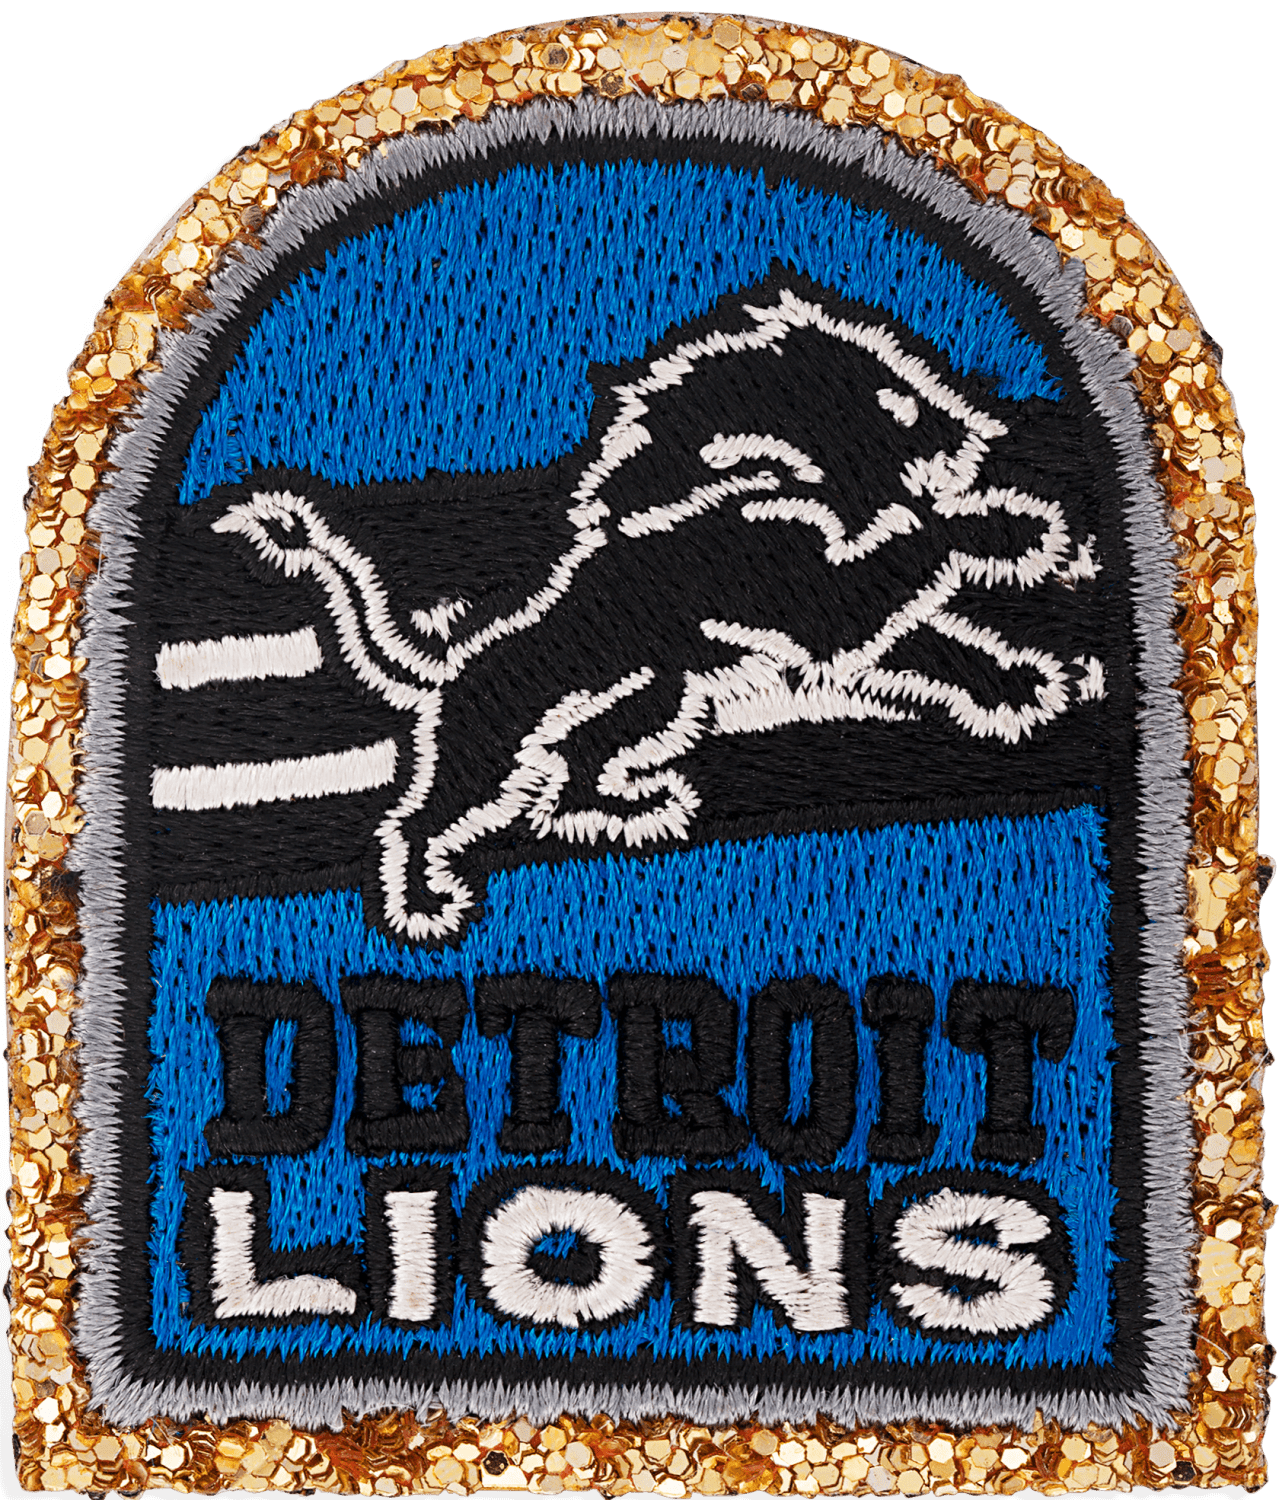 Detroit Lions Patch